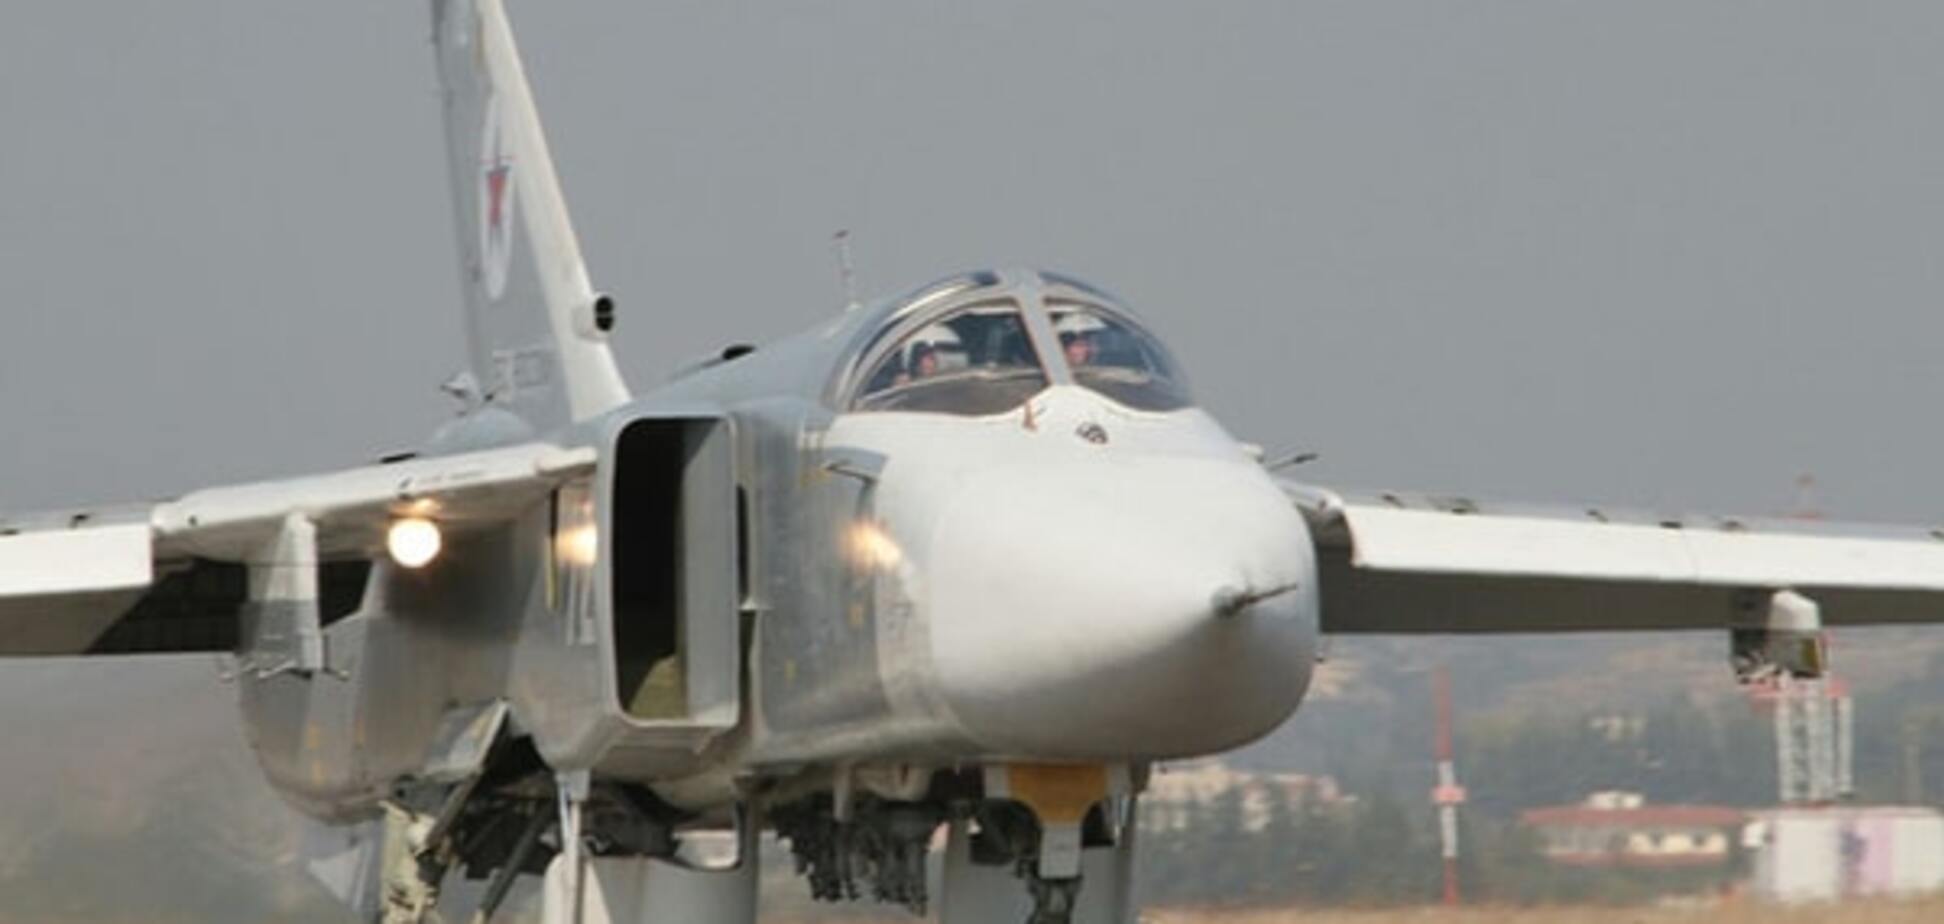 Атака на Су-24 была спланирована заранее - постпред РФ при ЕС